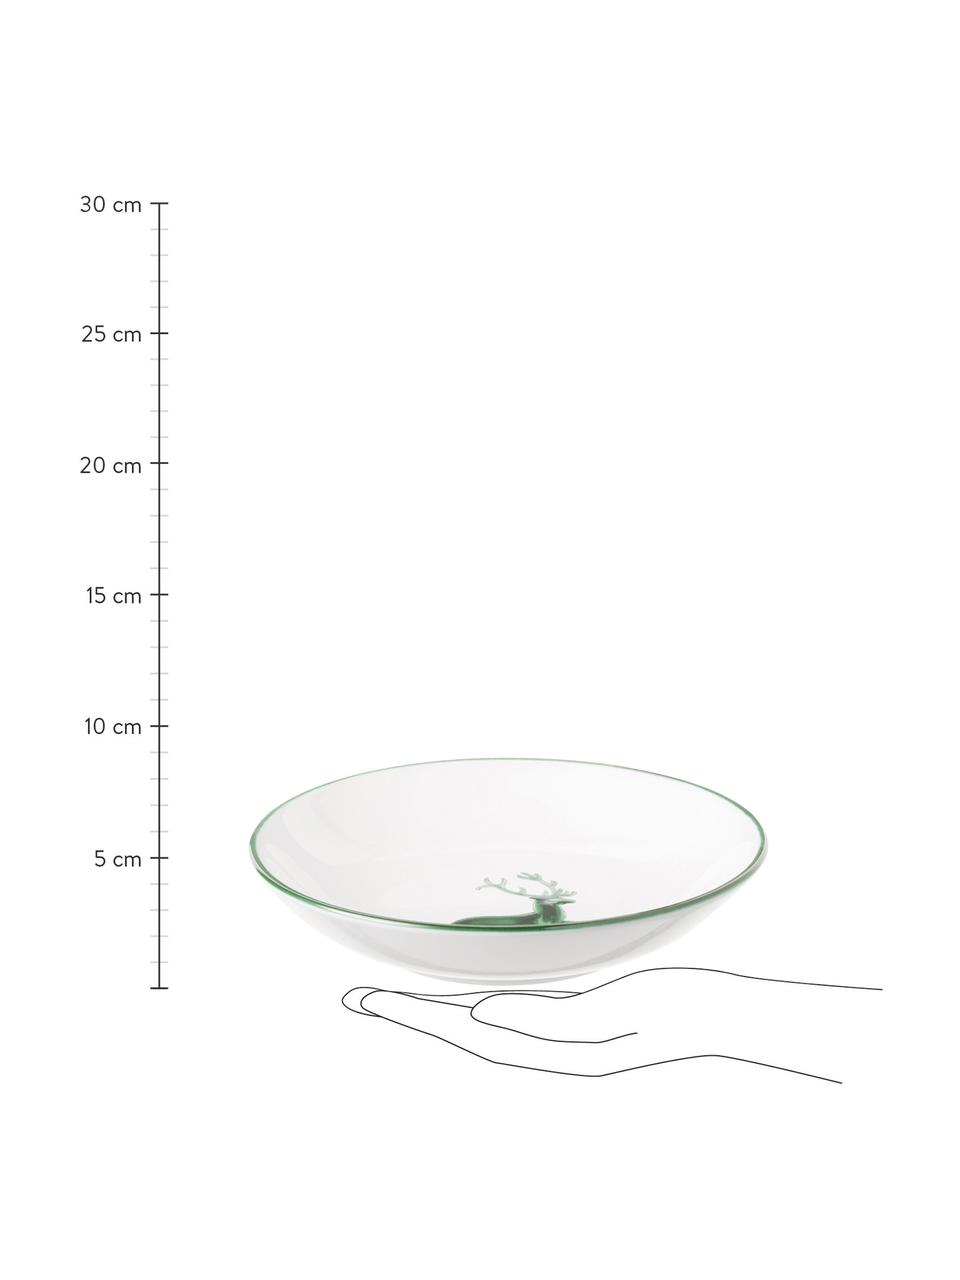 Assiette creuse peinte à la main Cerf Vert, Céramique, Blanc, vert, Ø 20 cm